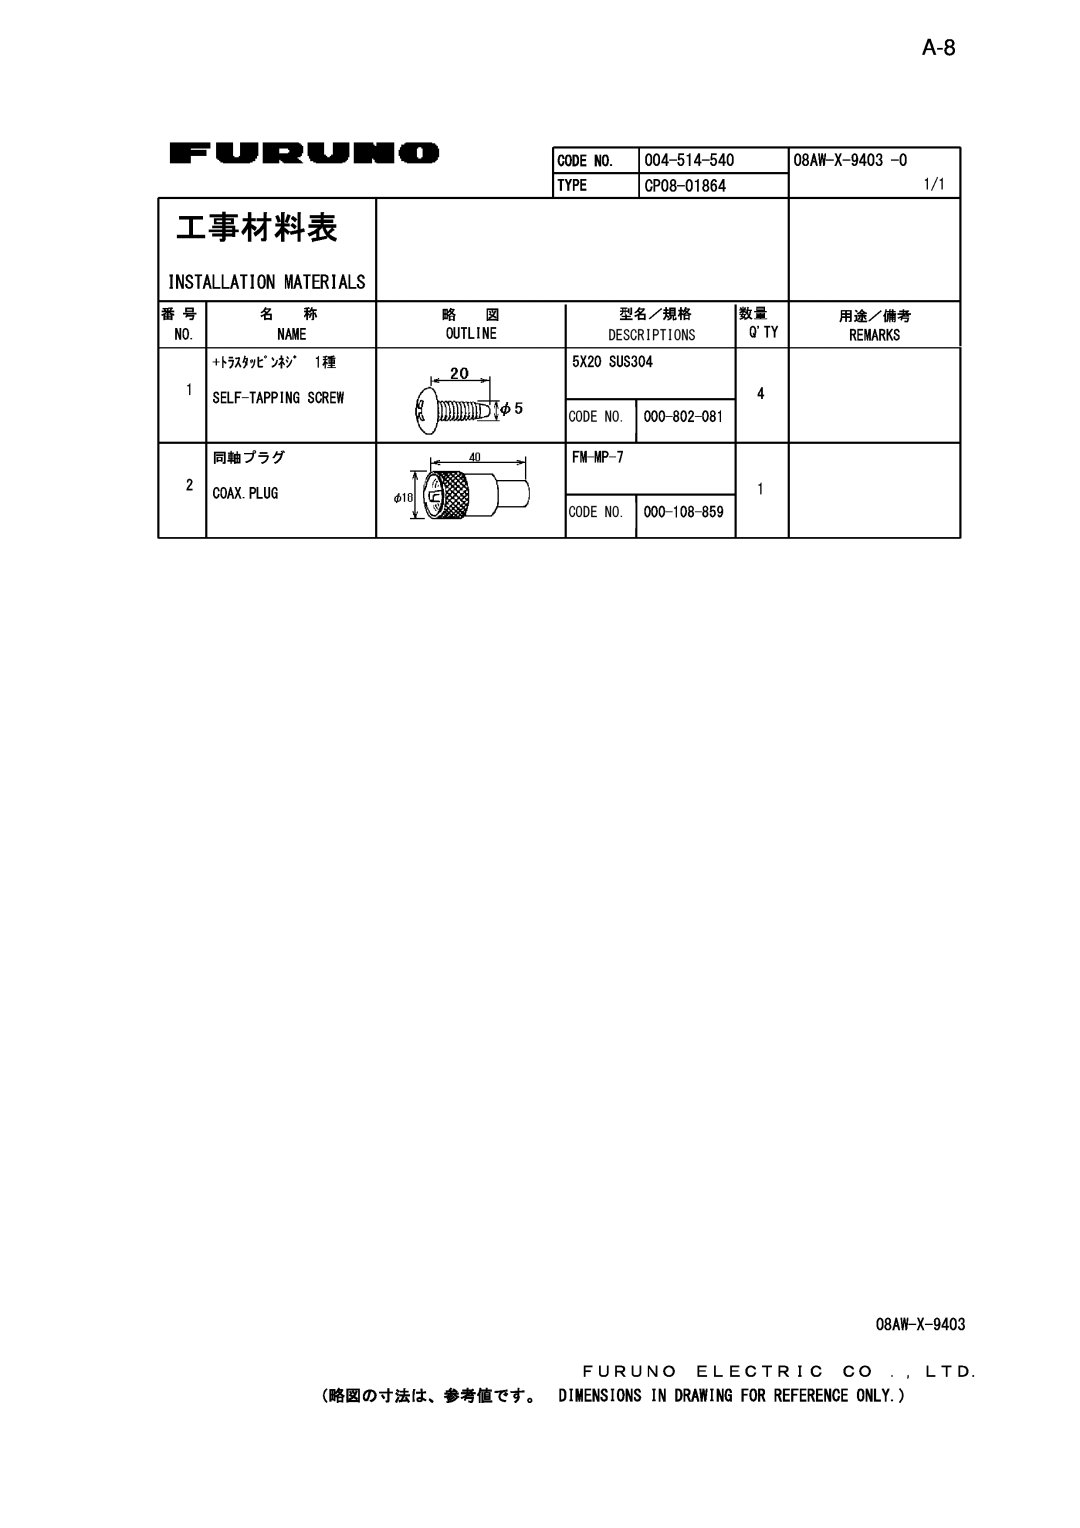 Furuno NX-700B manual 工事材料表, 004-514-540, CP08-01864, Installation Materials, 08AW-X-9403 ＦＵＲＵＮＯ ＥＬＥＣＴＲＩＣ ＣＯ ．，ＬＴＤ 